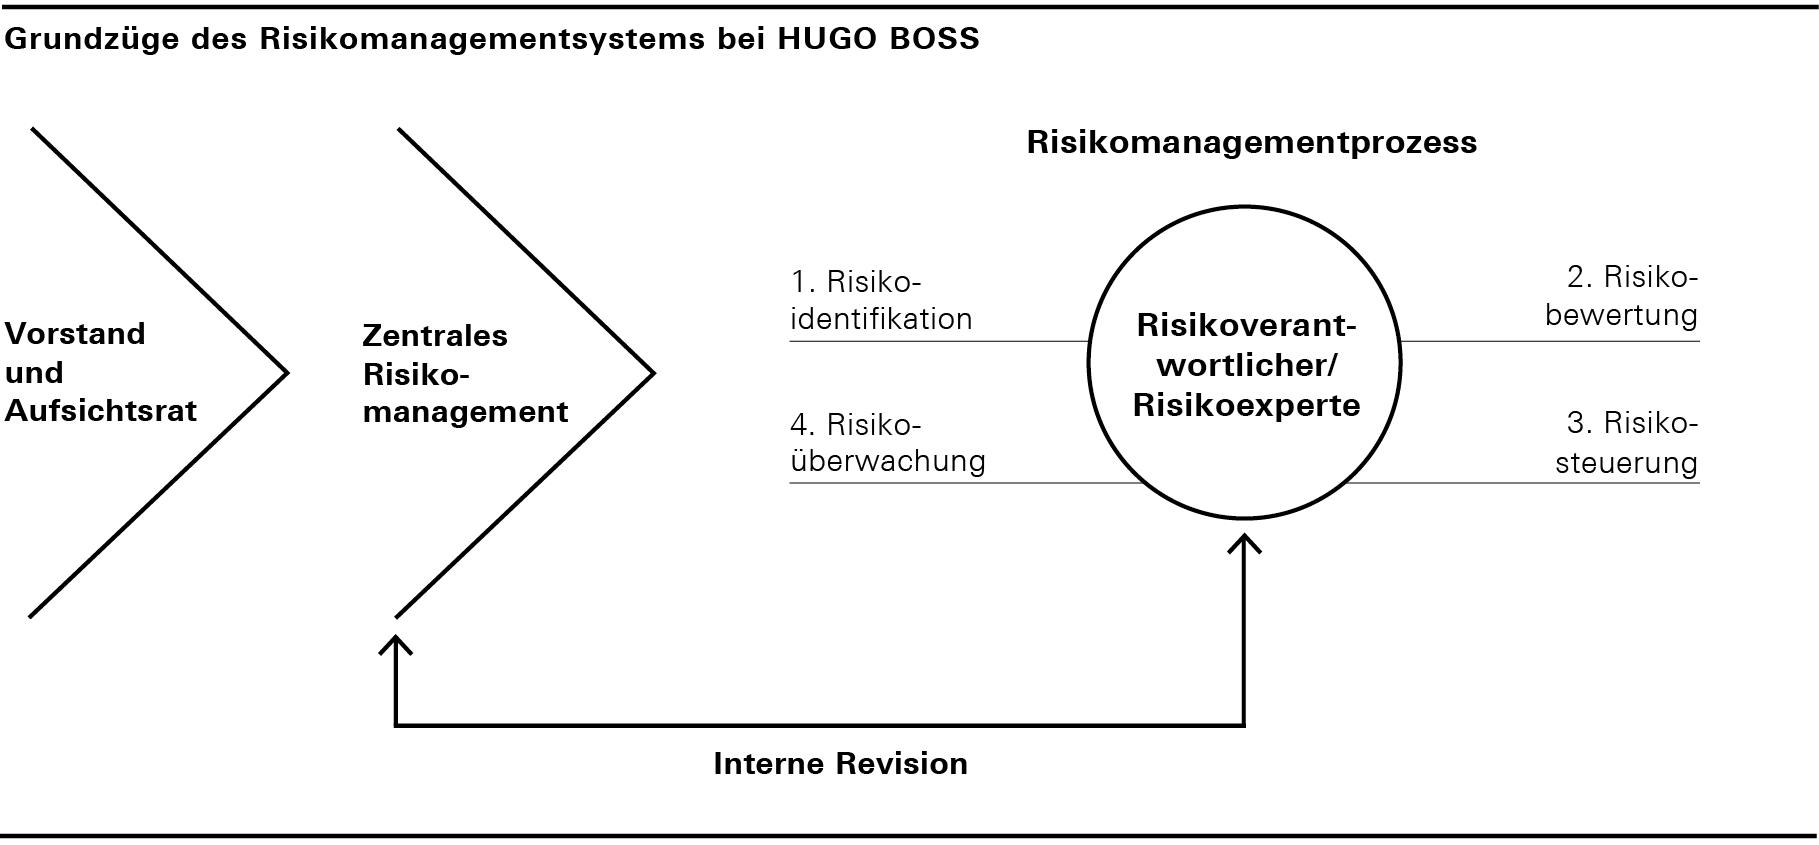 Grundzüge des Risikomanagementsystems bei HUGO BOSS (Balkendiagramm)